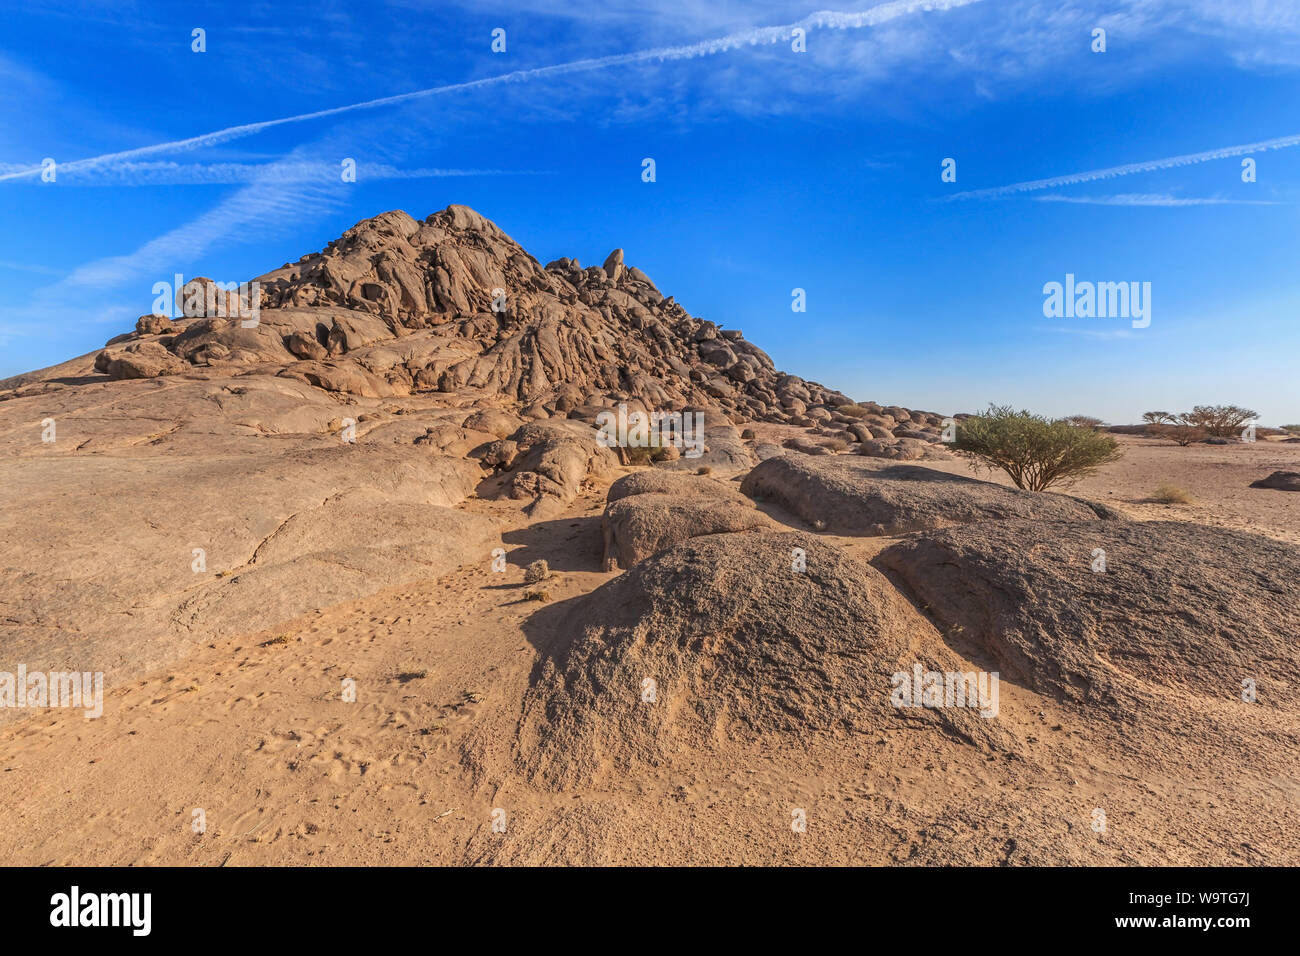 Mountain landscape in the desert, Riyadh, Saudi Arabia Stock Photo